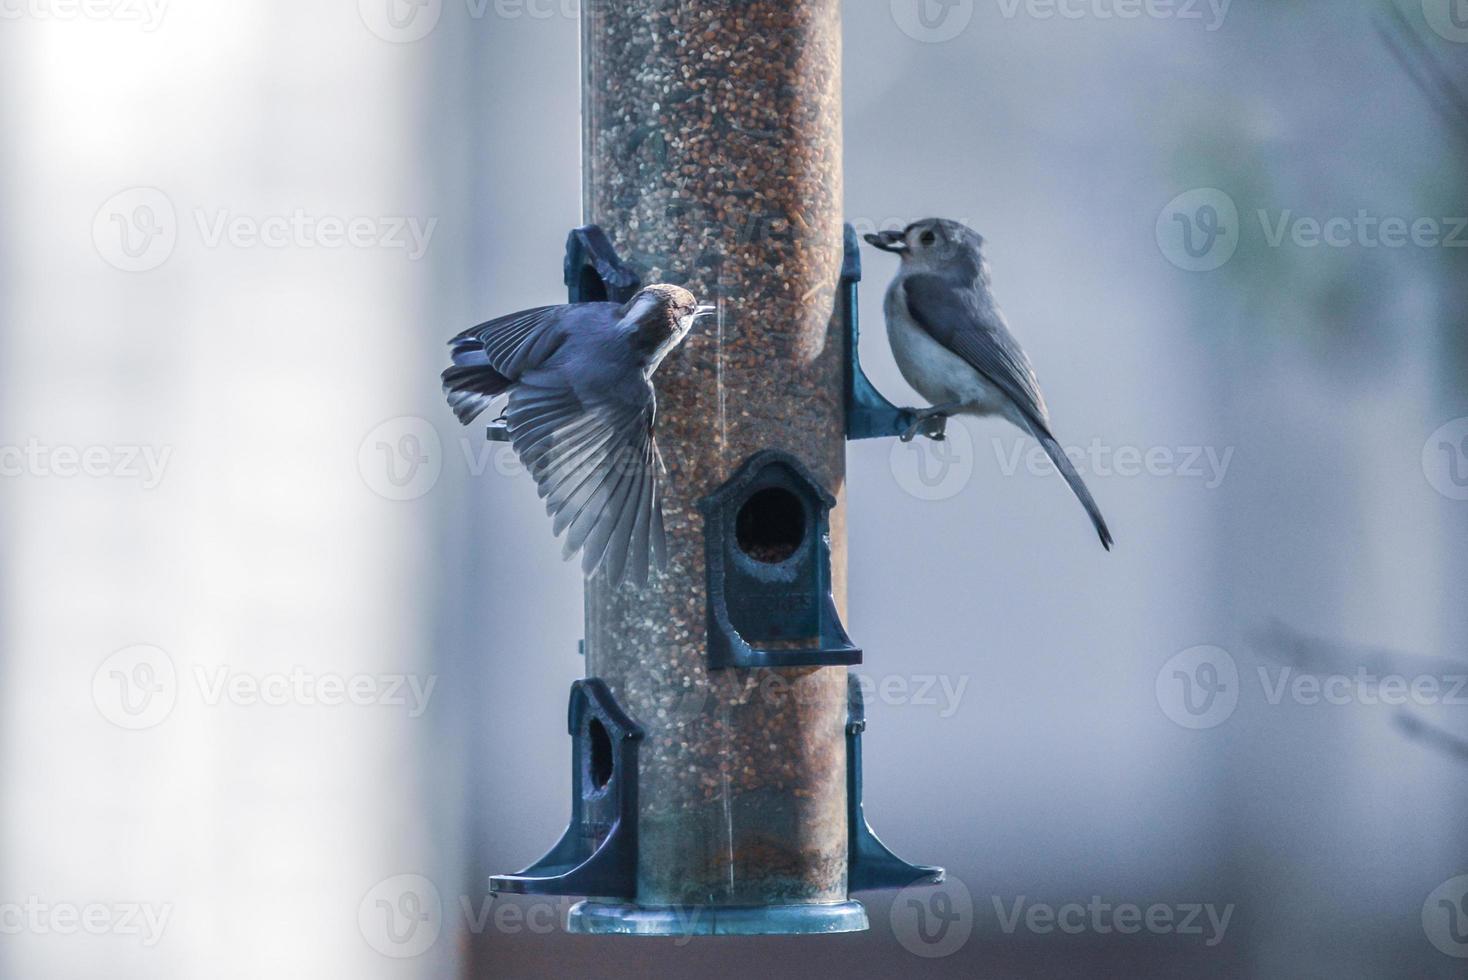 backyard birds around bird feeder photo